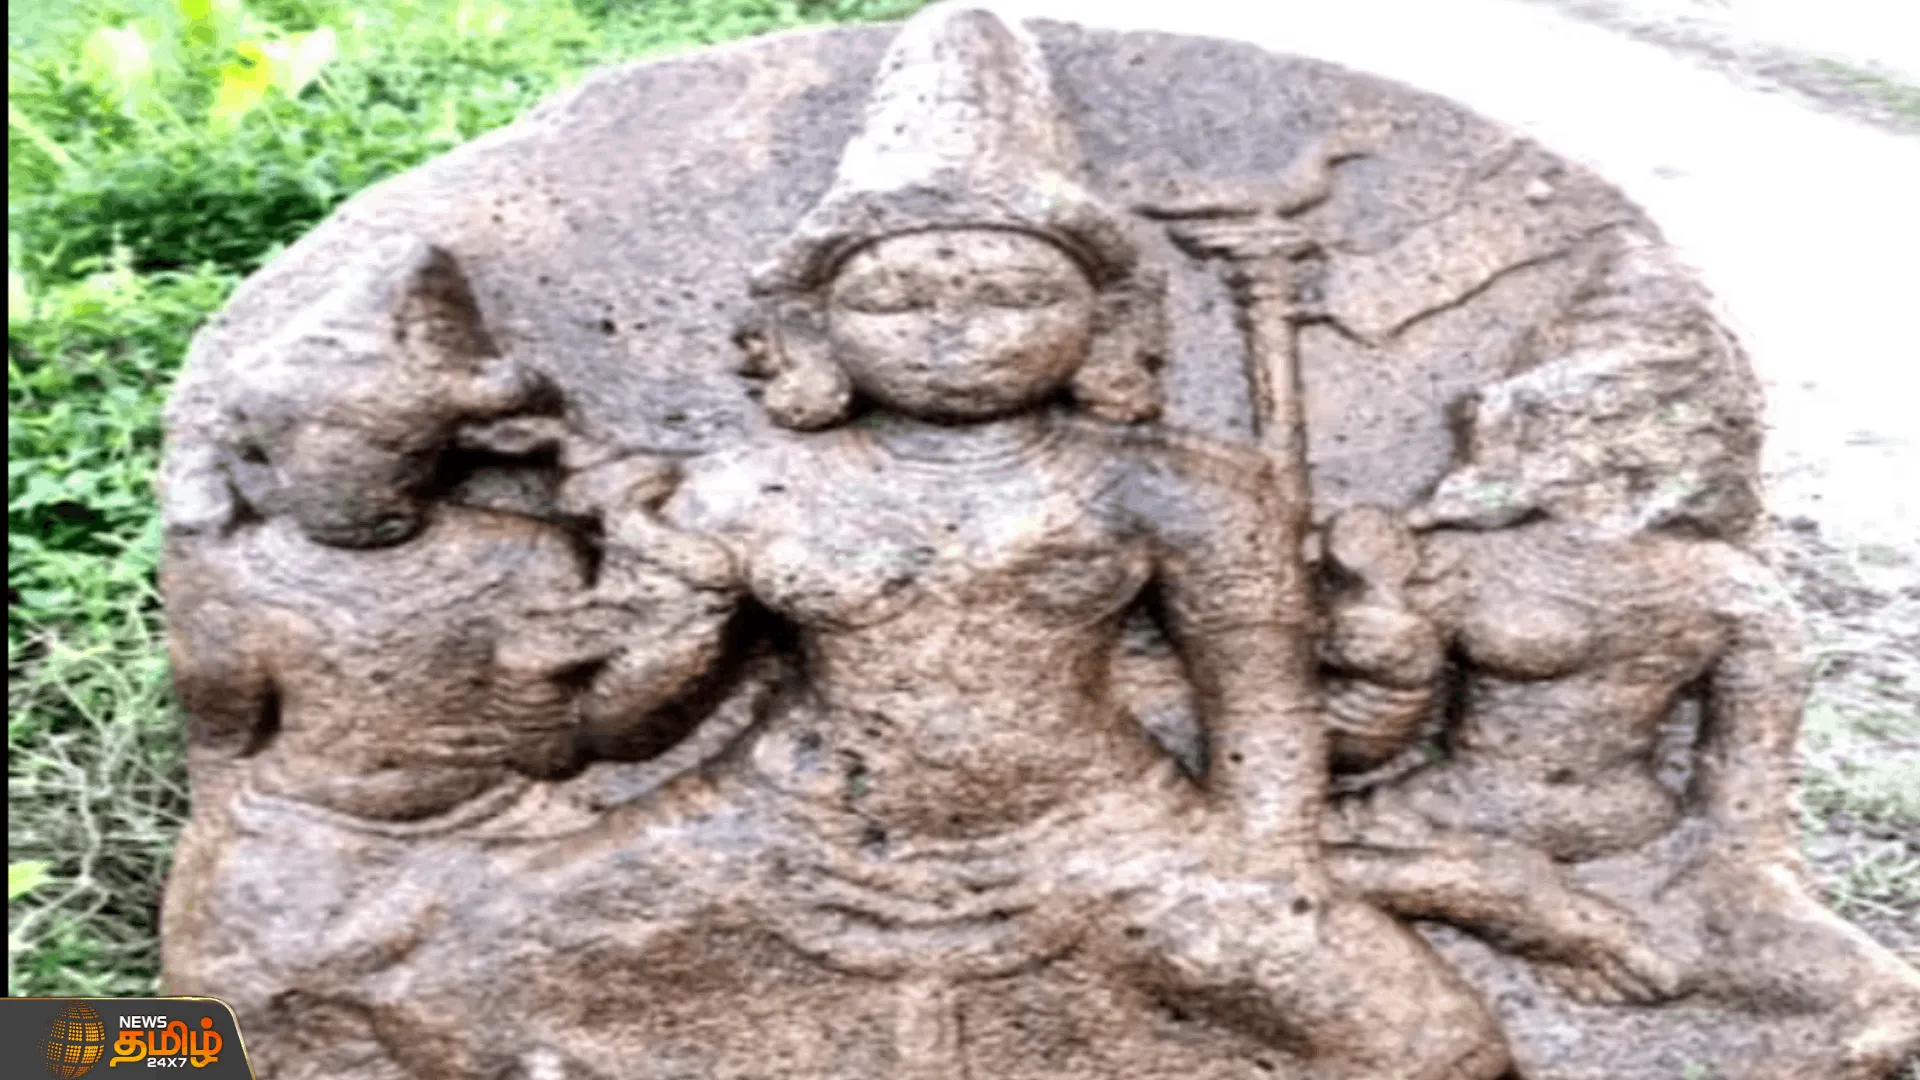 பழங்கால அம்பாள் கற்சிலை கண்டெடுப்பு  கற்சிலையை எடுத்து சென்று அதிகாரிகள் ஆய்வு